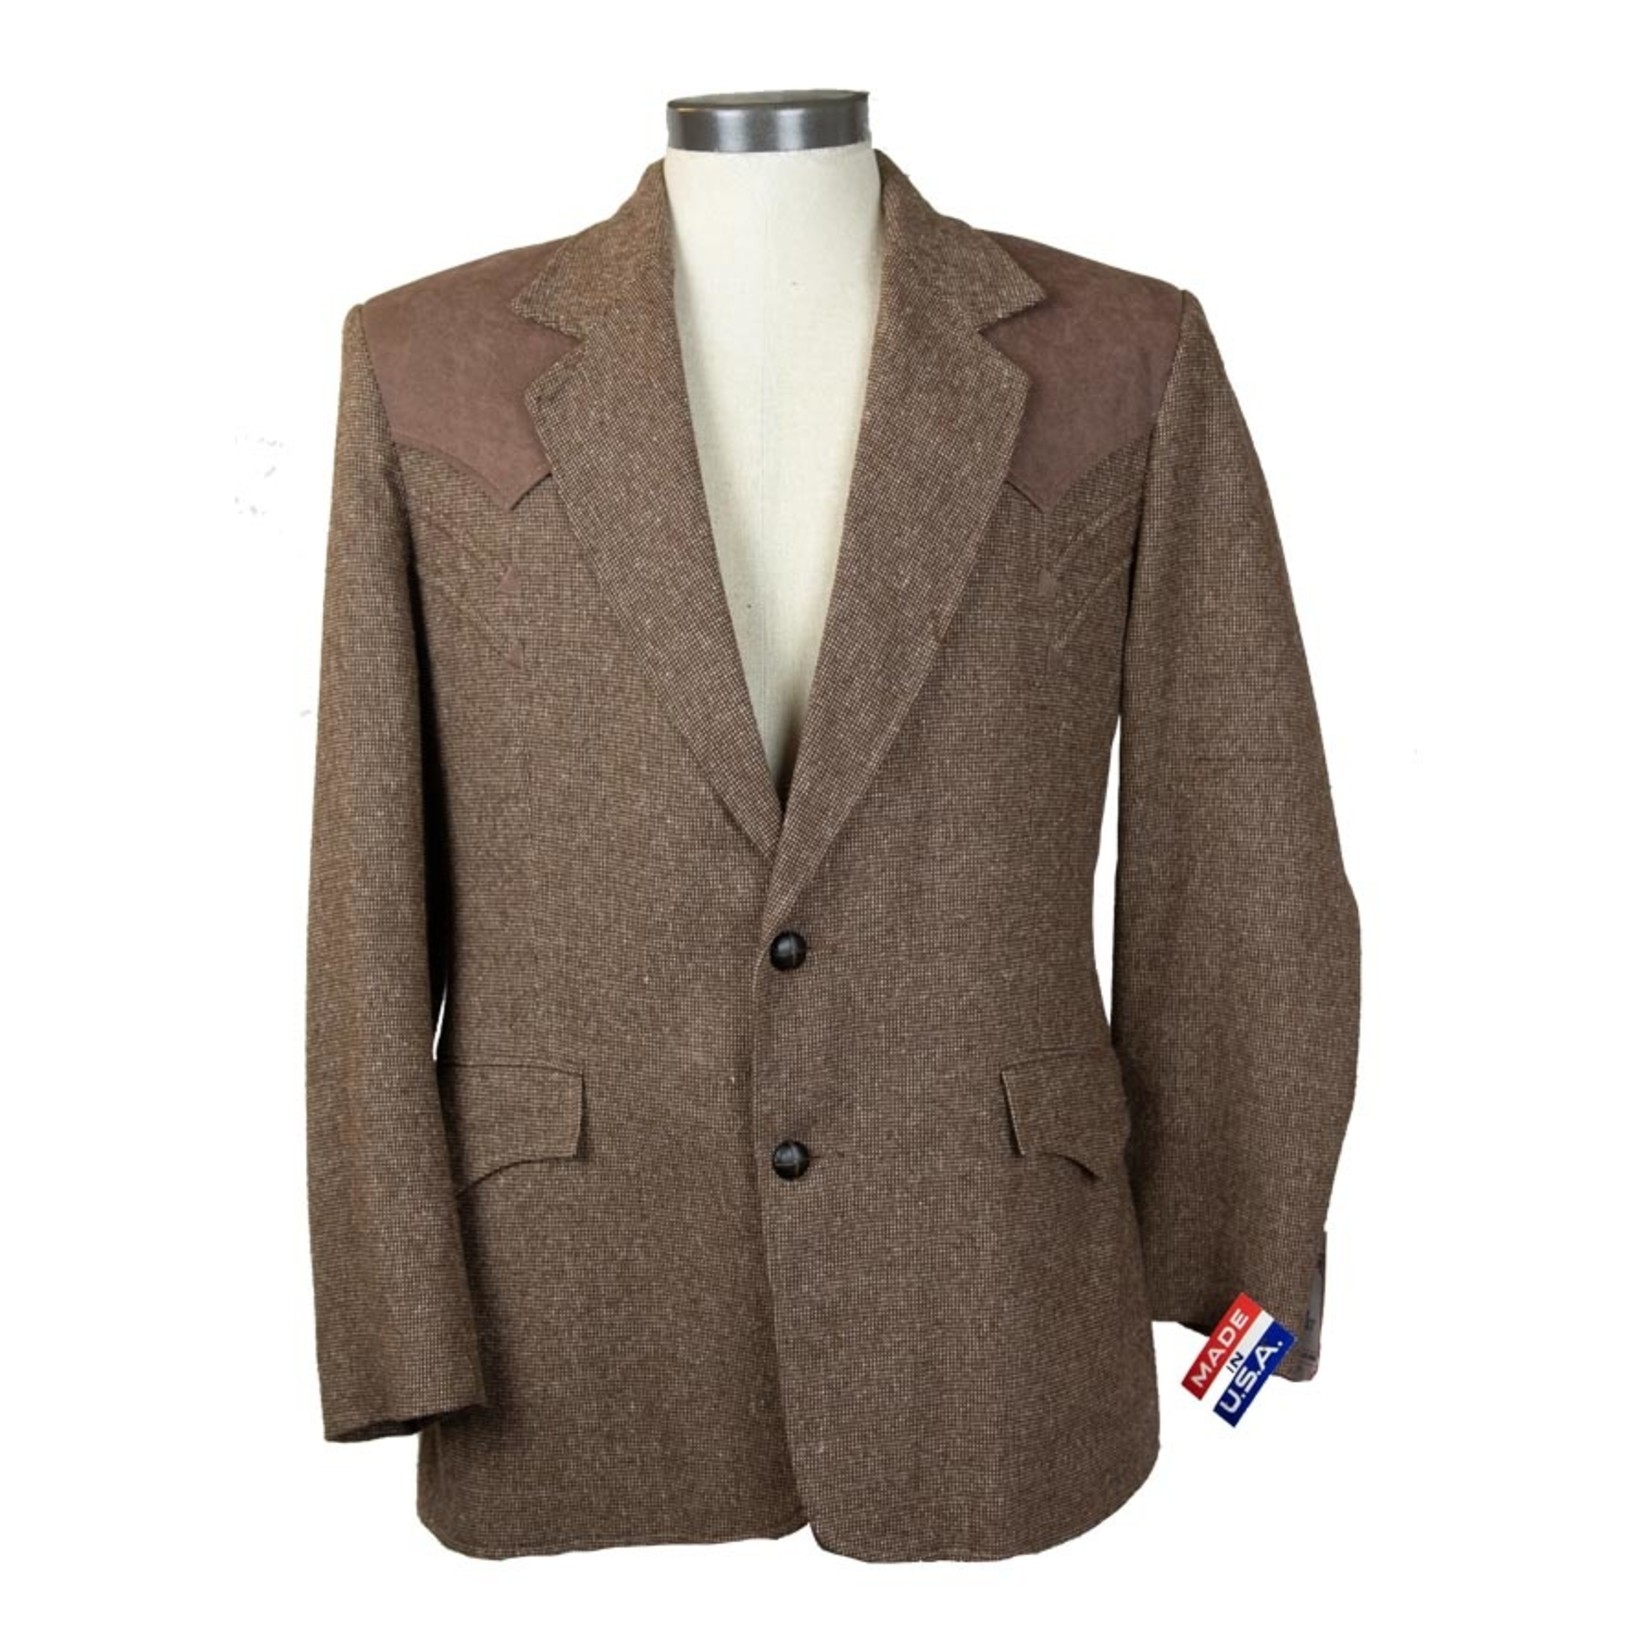 Pioneer Suits Wool Blend Vintage Suit Jacket - Size 40 - #29